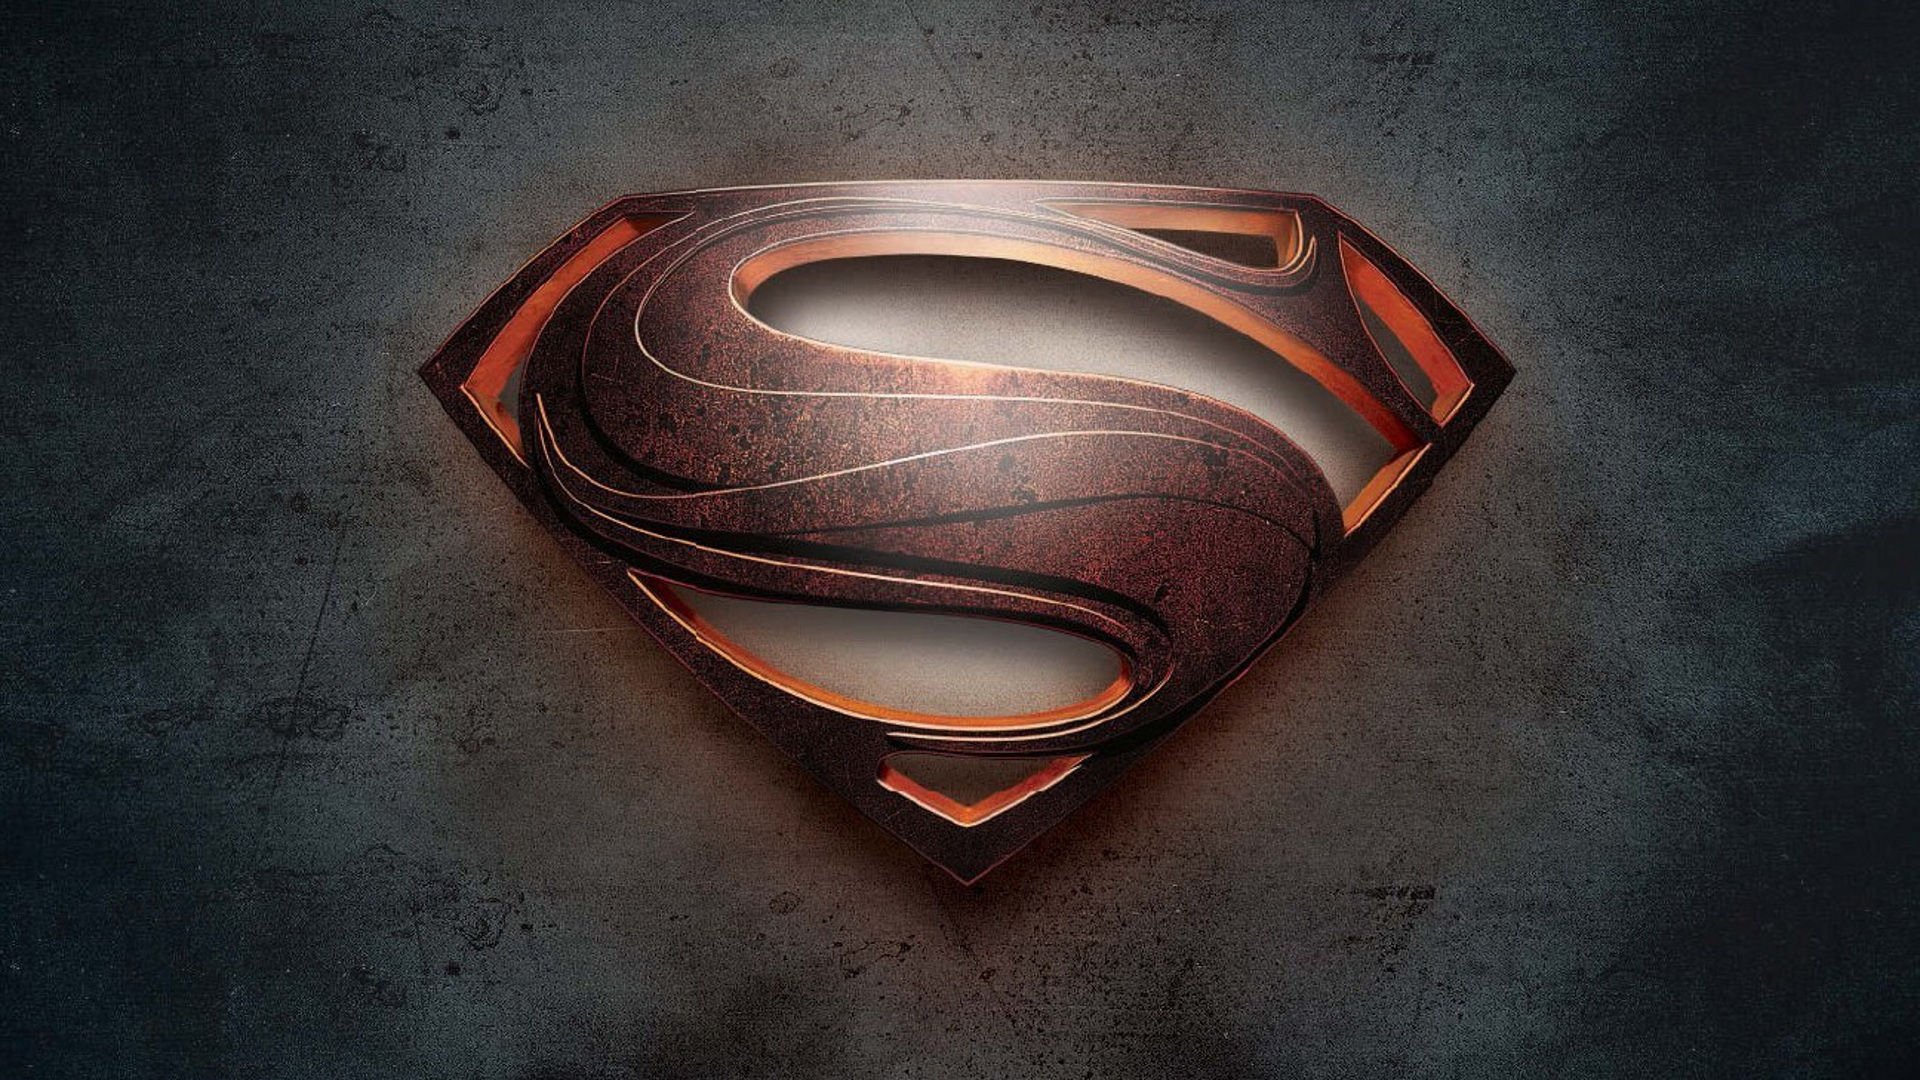 Superman Logo desktop backgrounds Background HD Wallpaper for